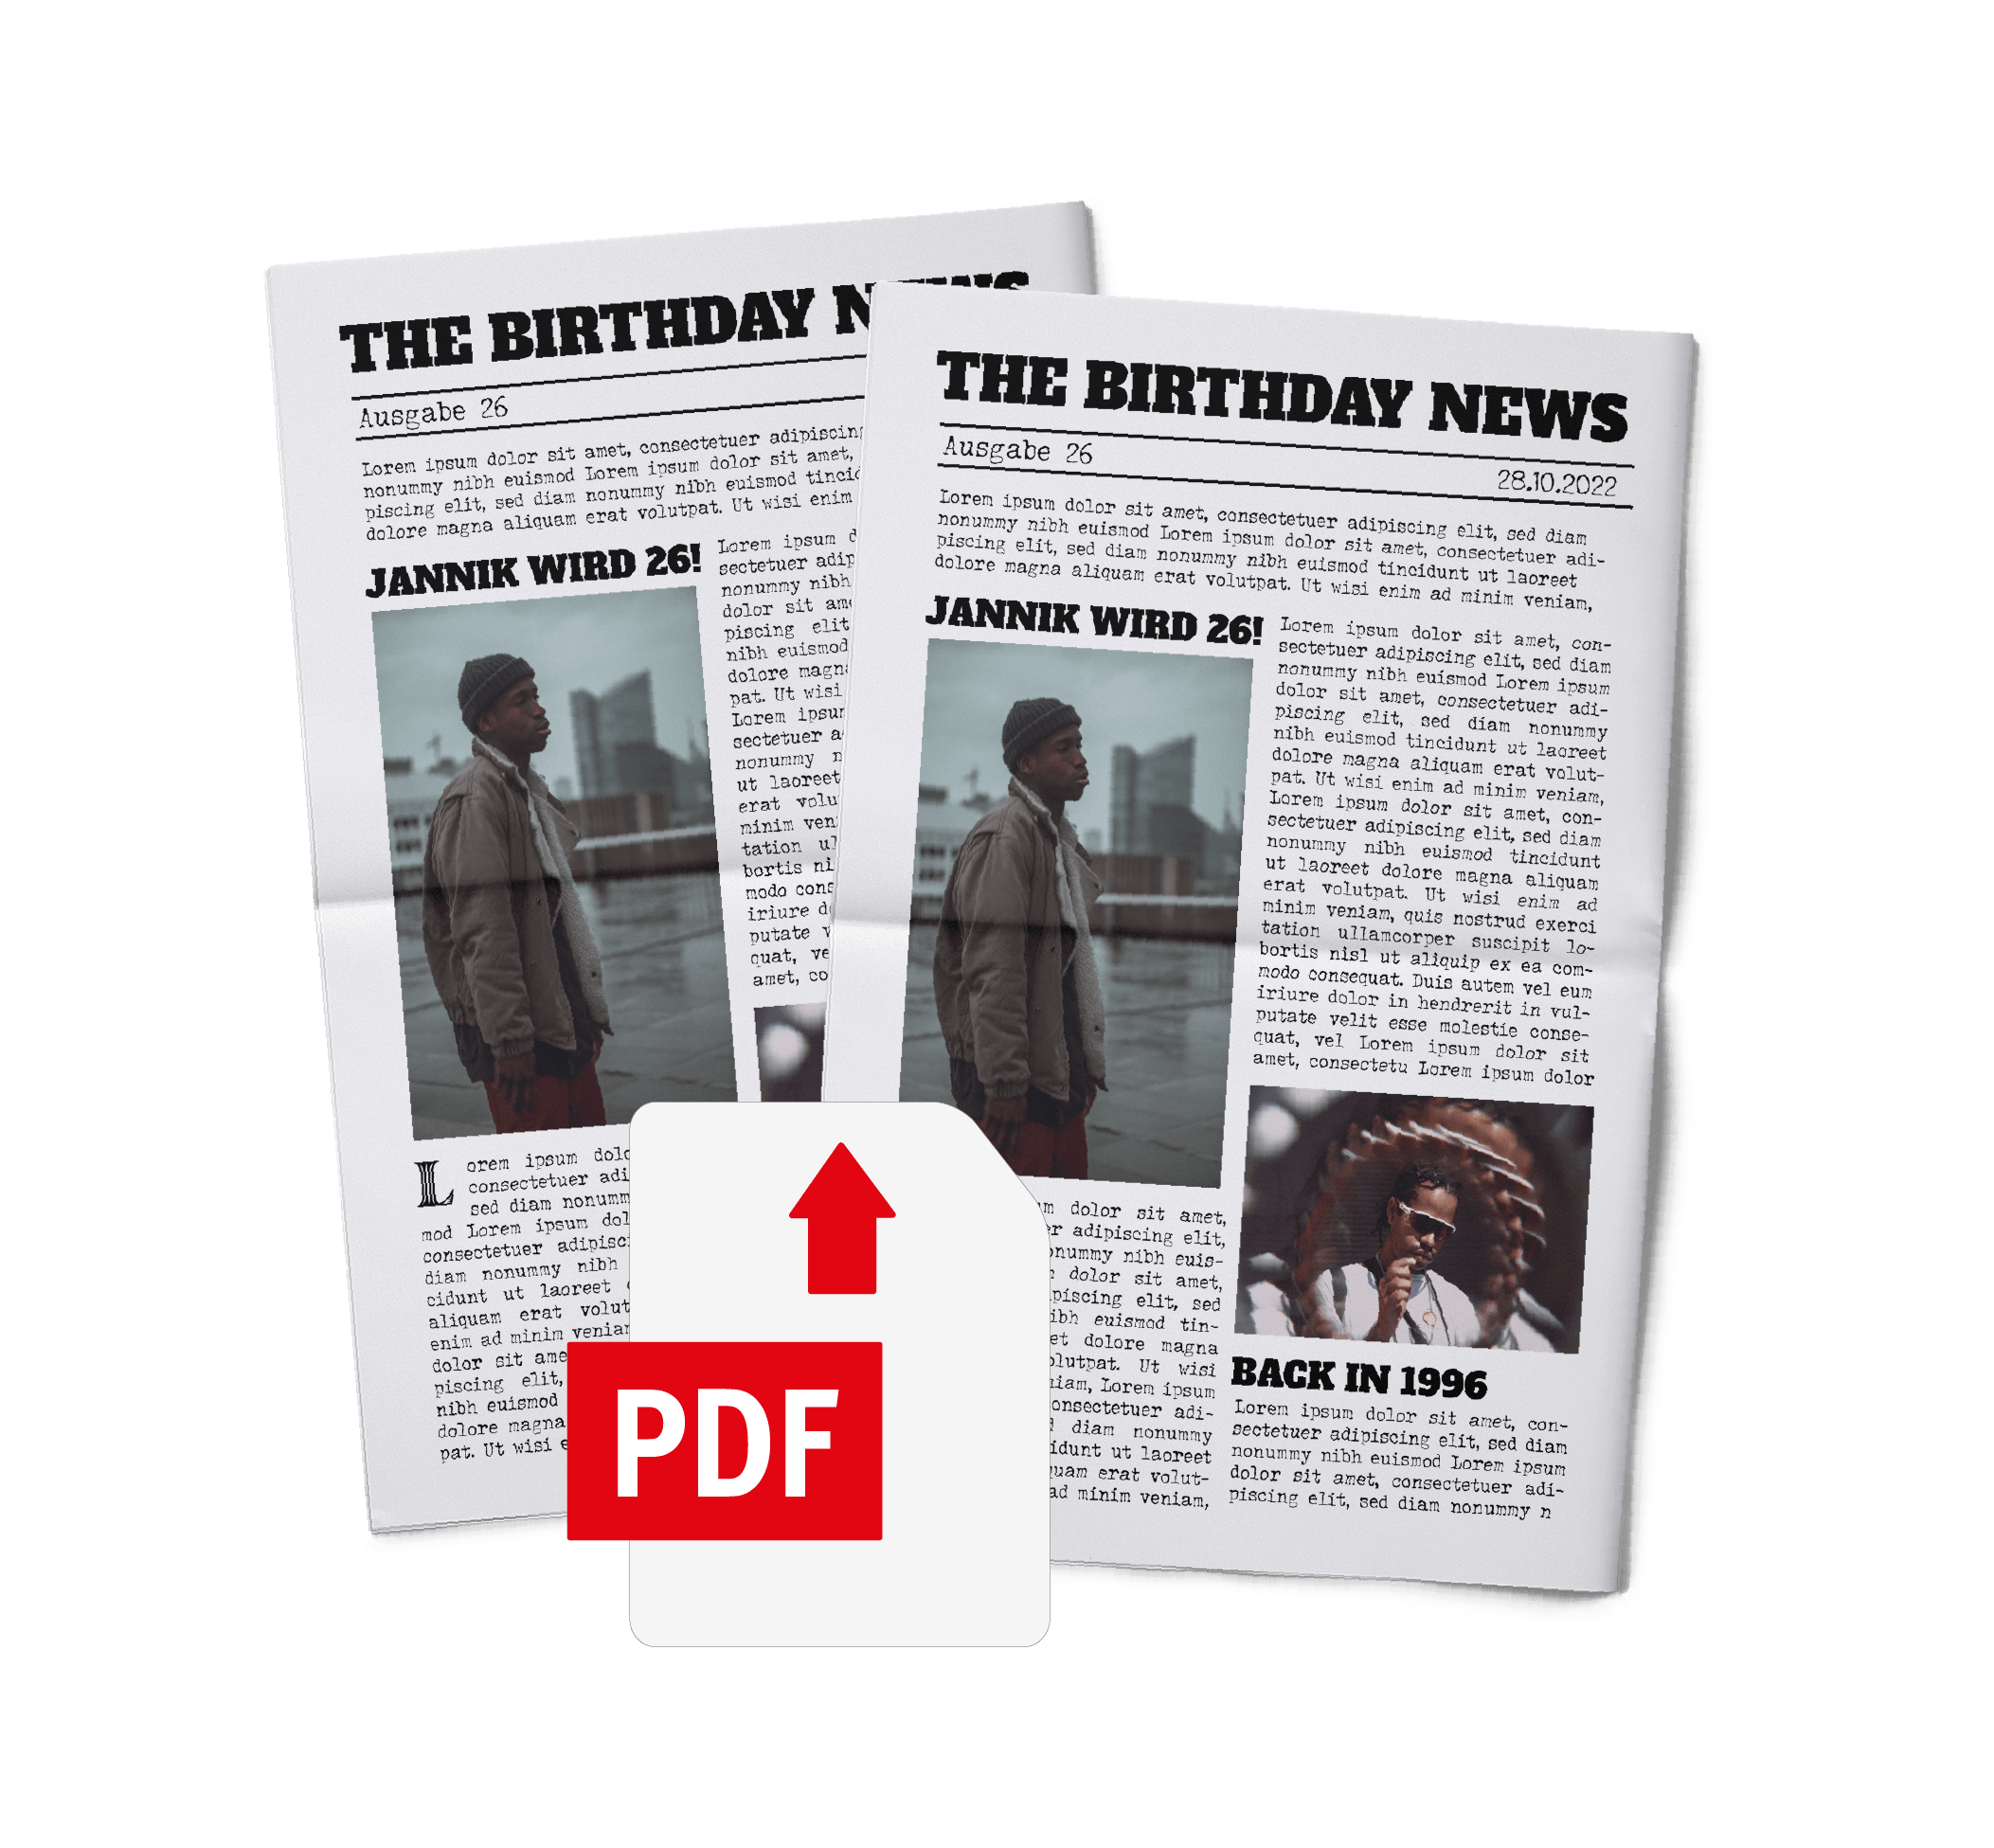 Eigene PDF als echte Geburtstagszeitung drucken lassen